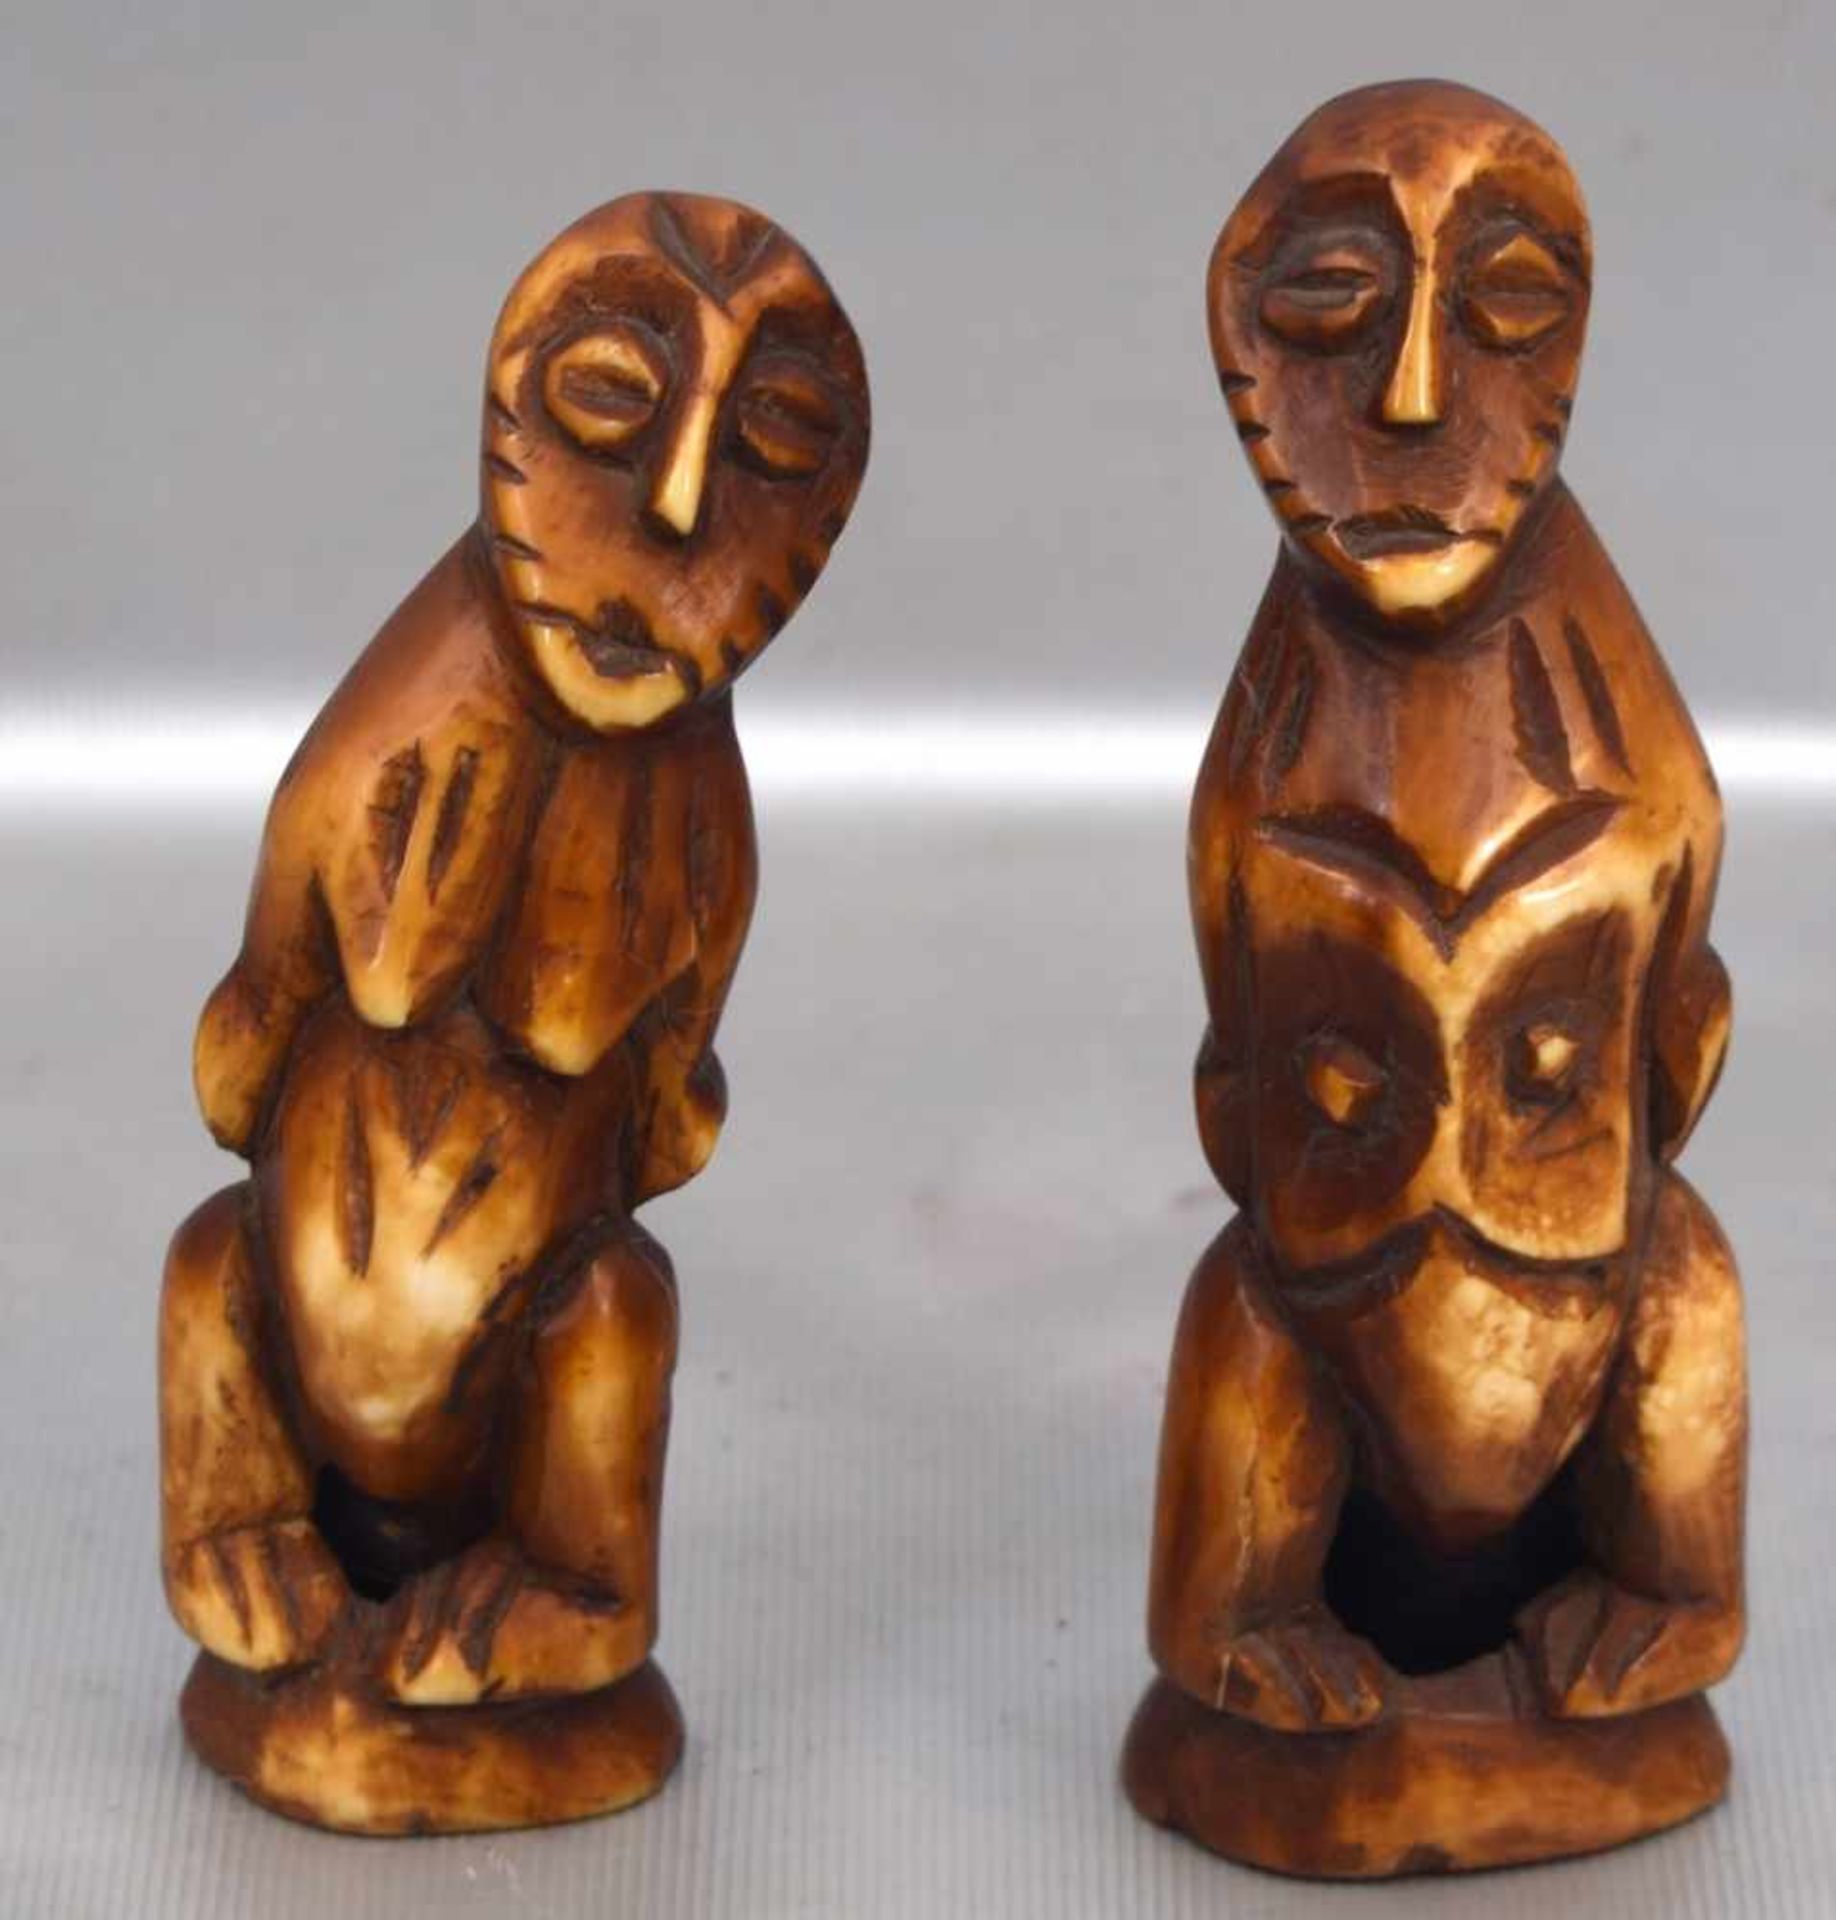 Afrikanisches PaarMammut, geschnitzt, auf Sockel stehend, H 12 cm